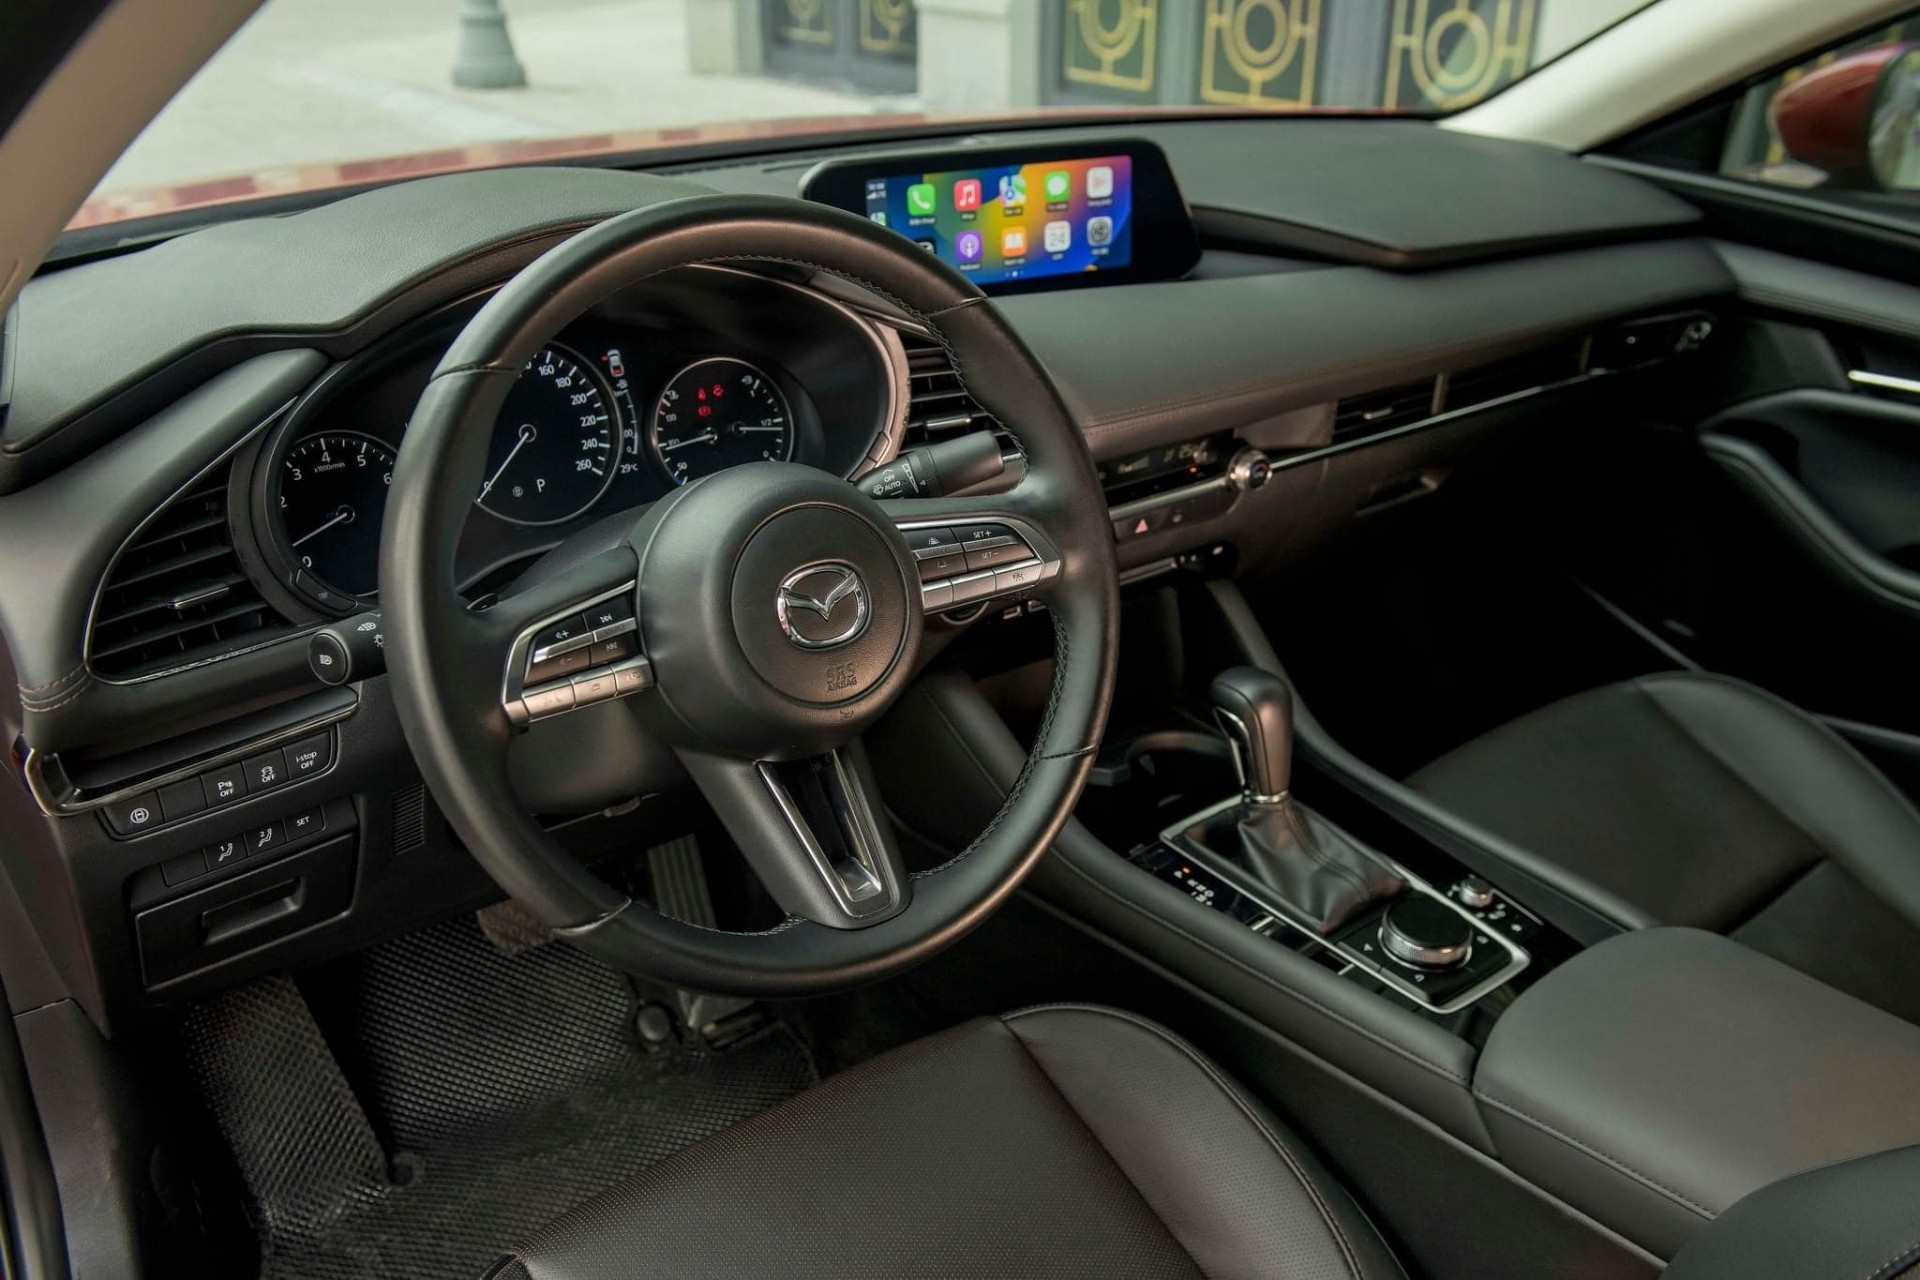 Mazda3 thêm phiên bản 1.5 Signature: Giá 739 triệu, bổ sung 4 trang bị, tính năng cao cấp